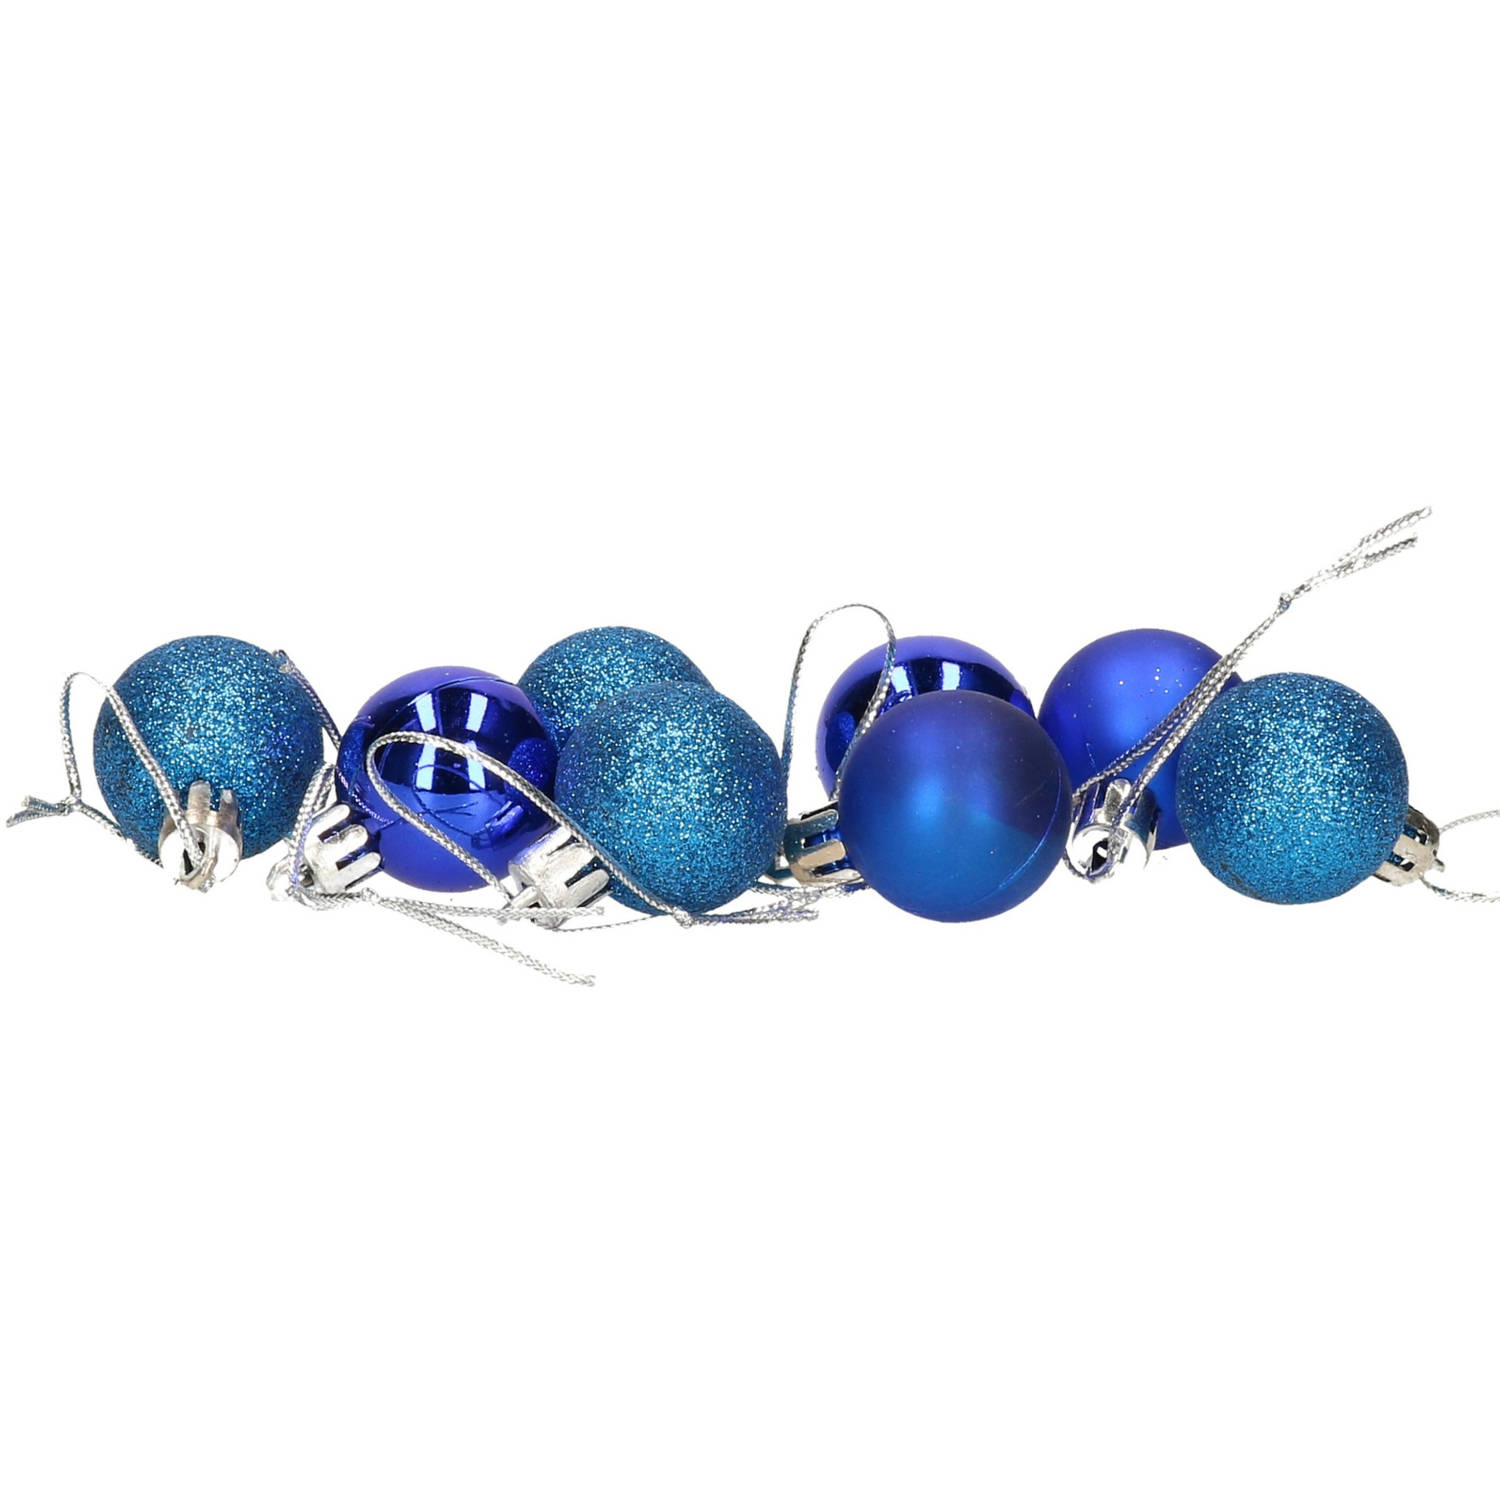 8x Stuks Kerstballen Blauw Mix Van Mat/glans/glitter Kunststof 3 Cm - Kerstbal